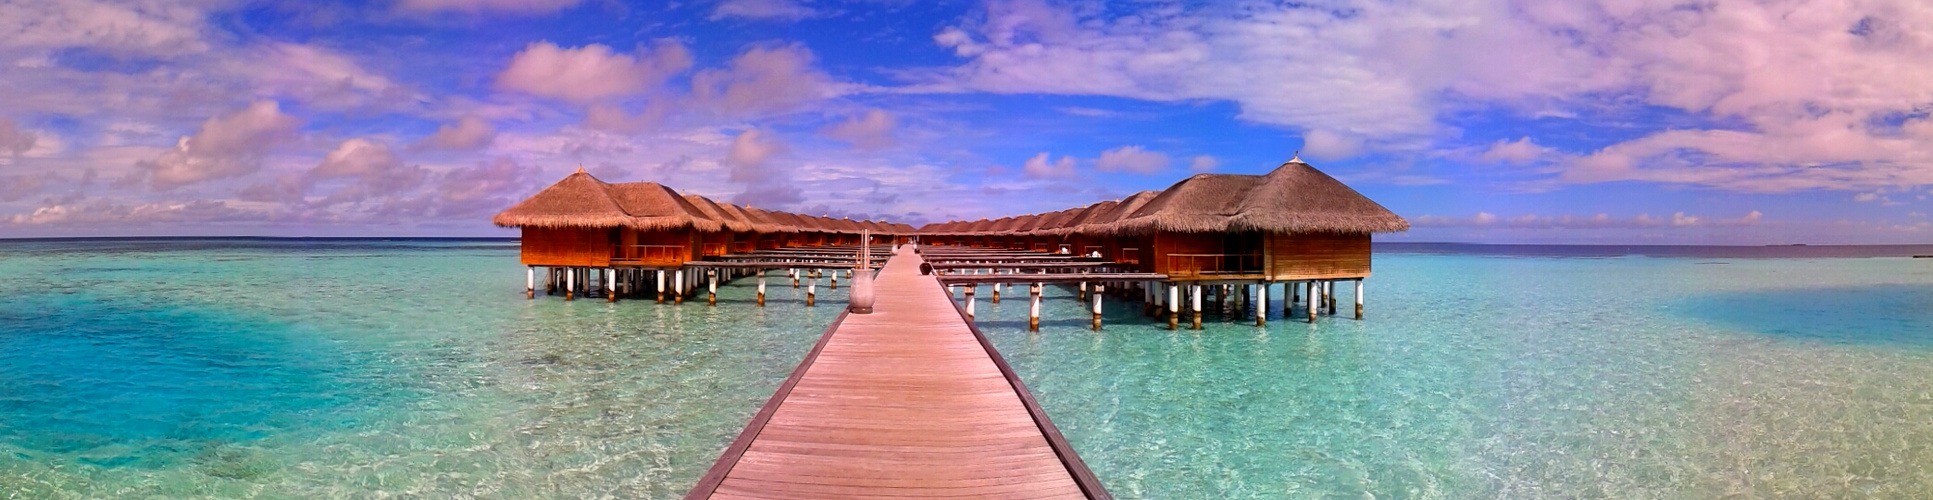 Beautiful maldives